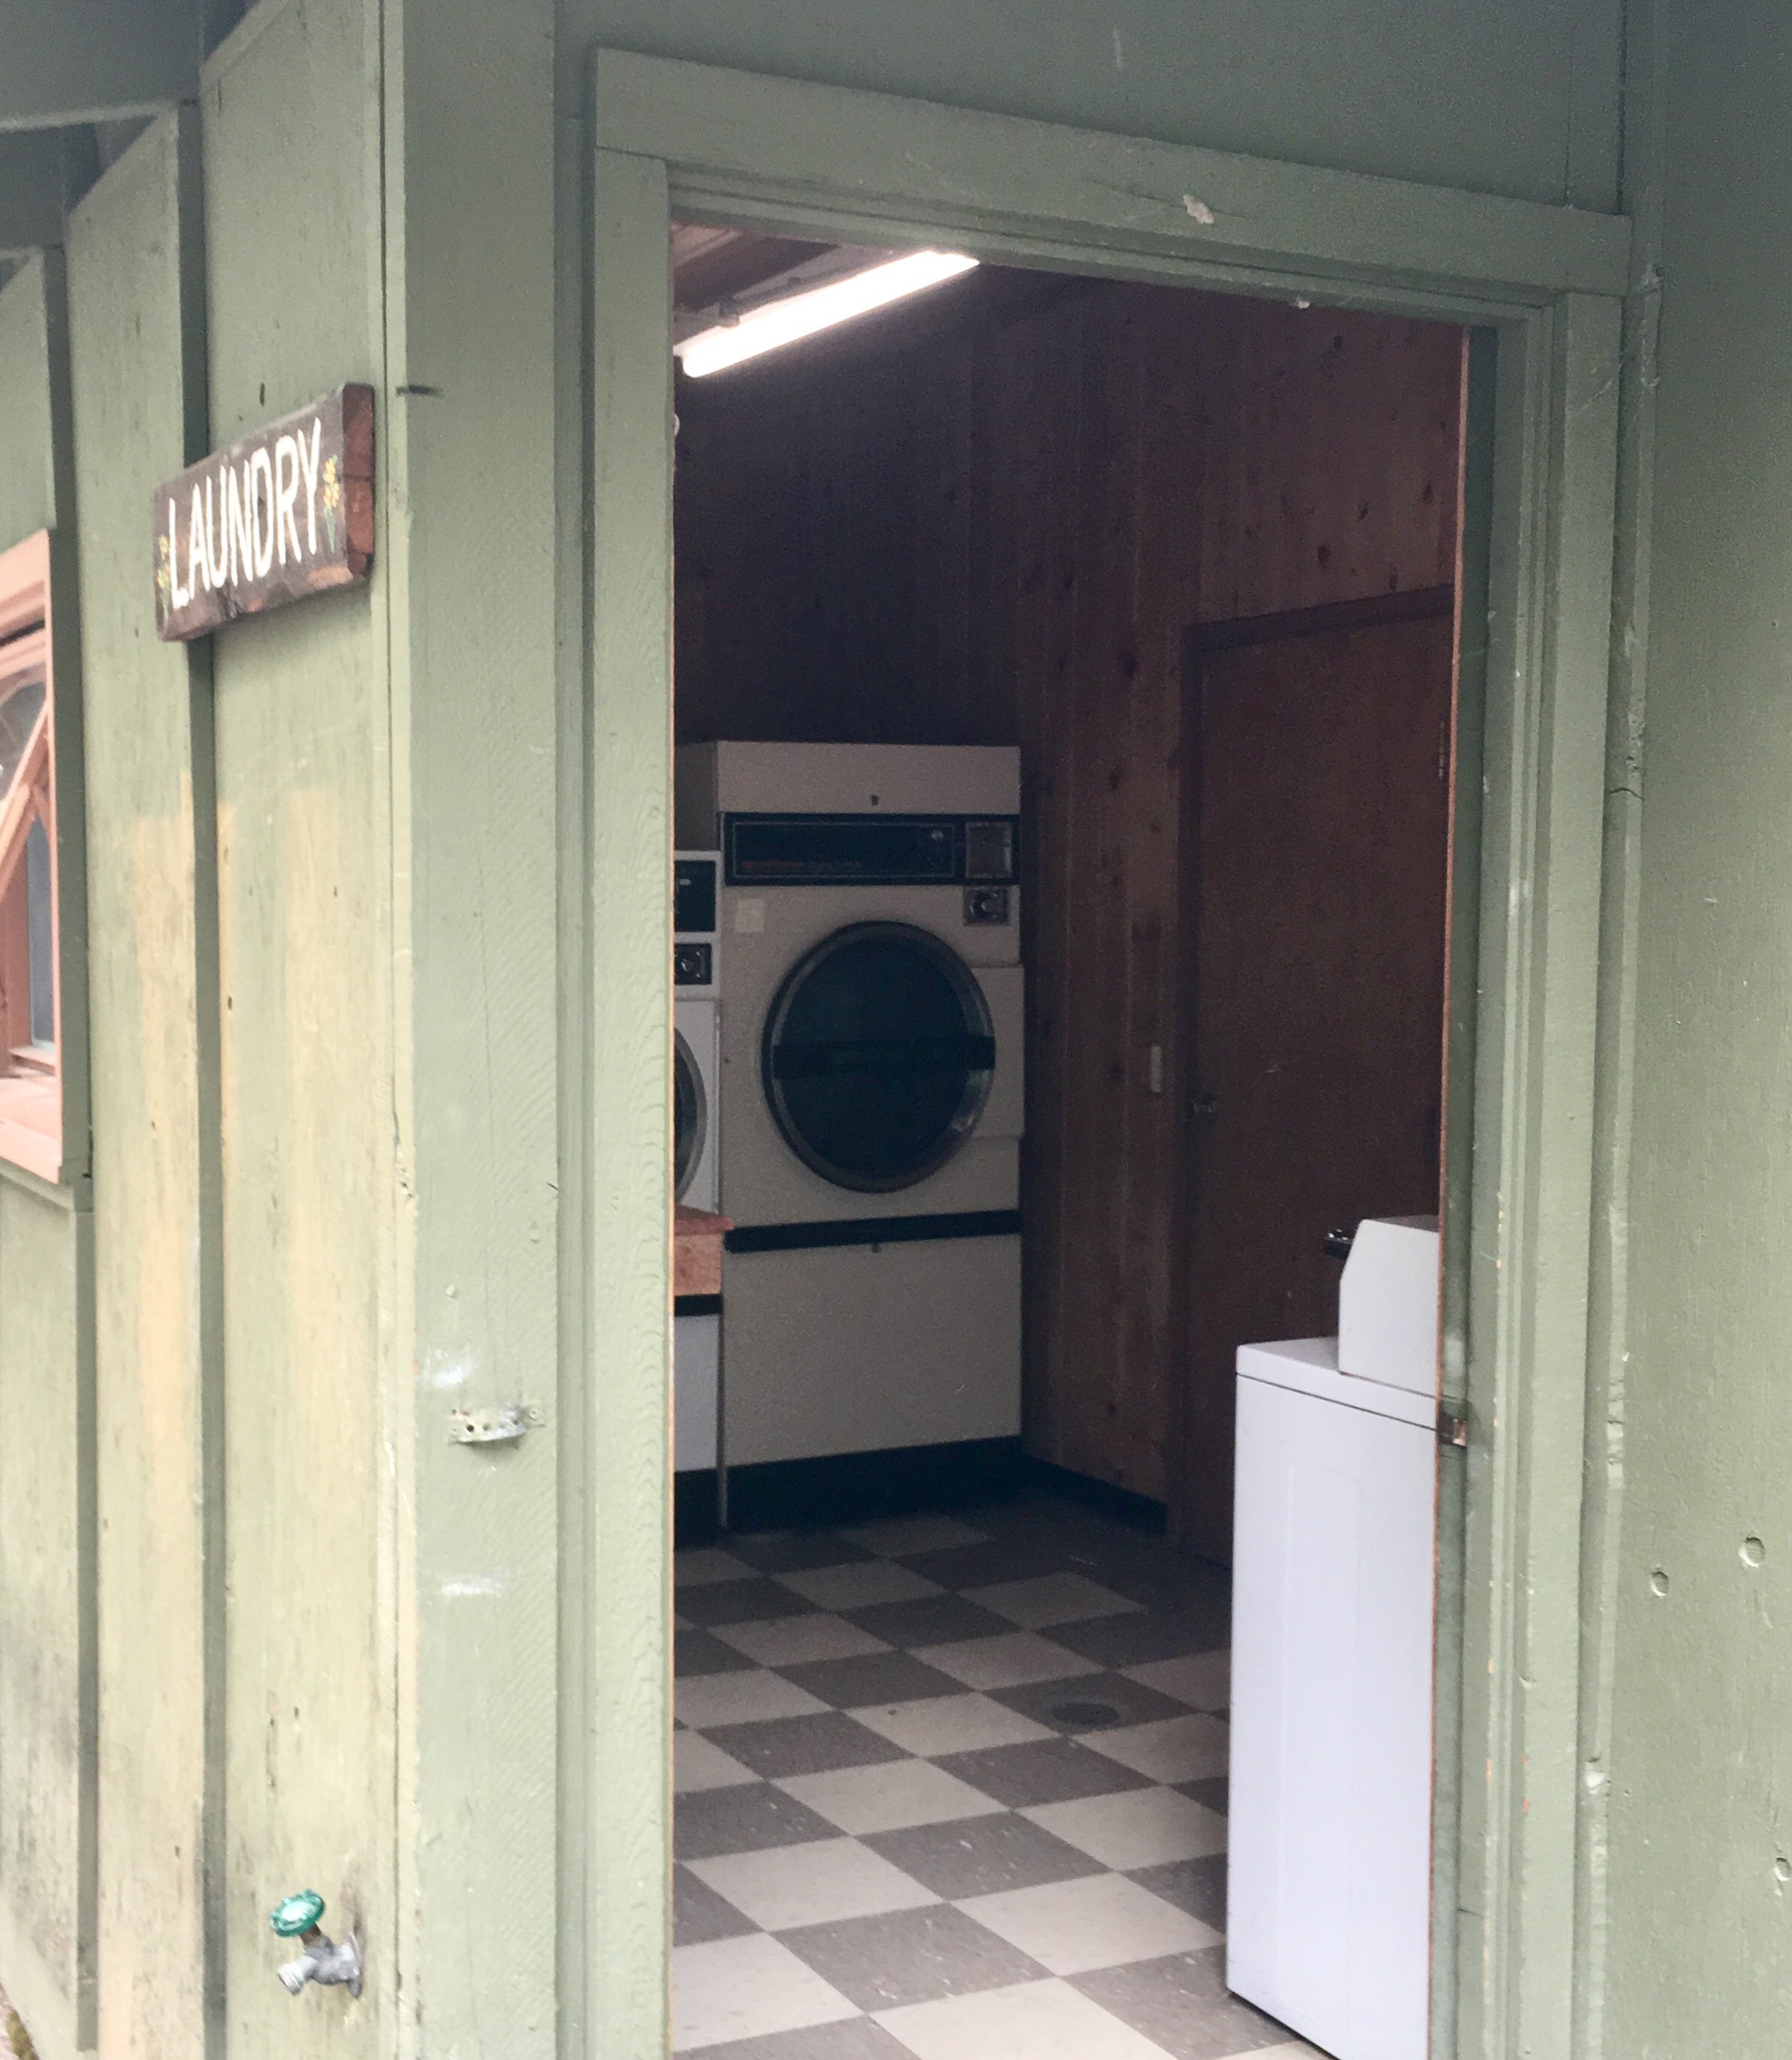 Laundry facilities near the washrooms